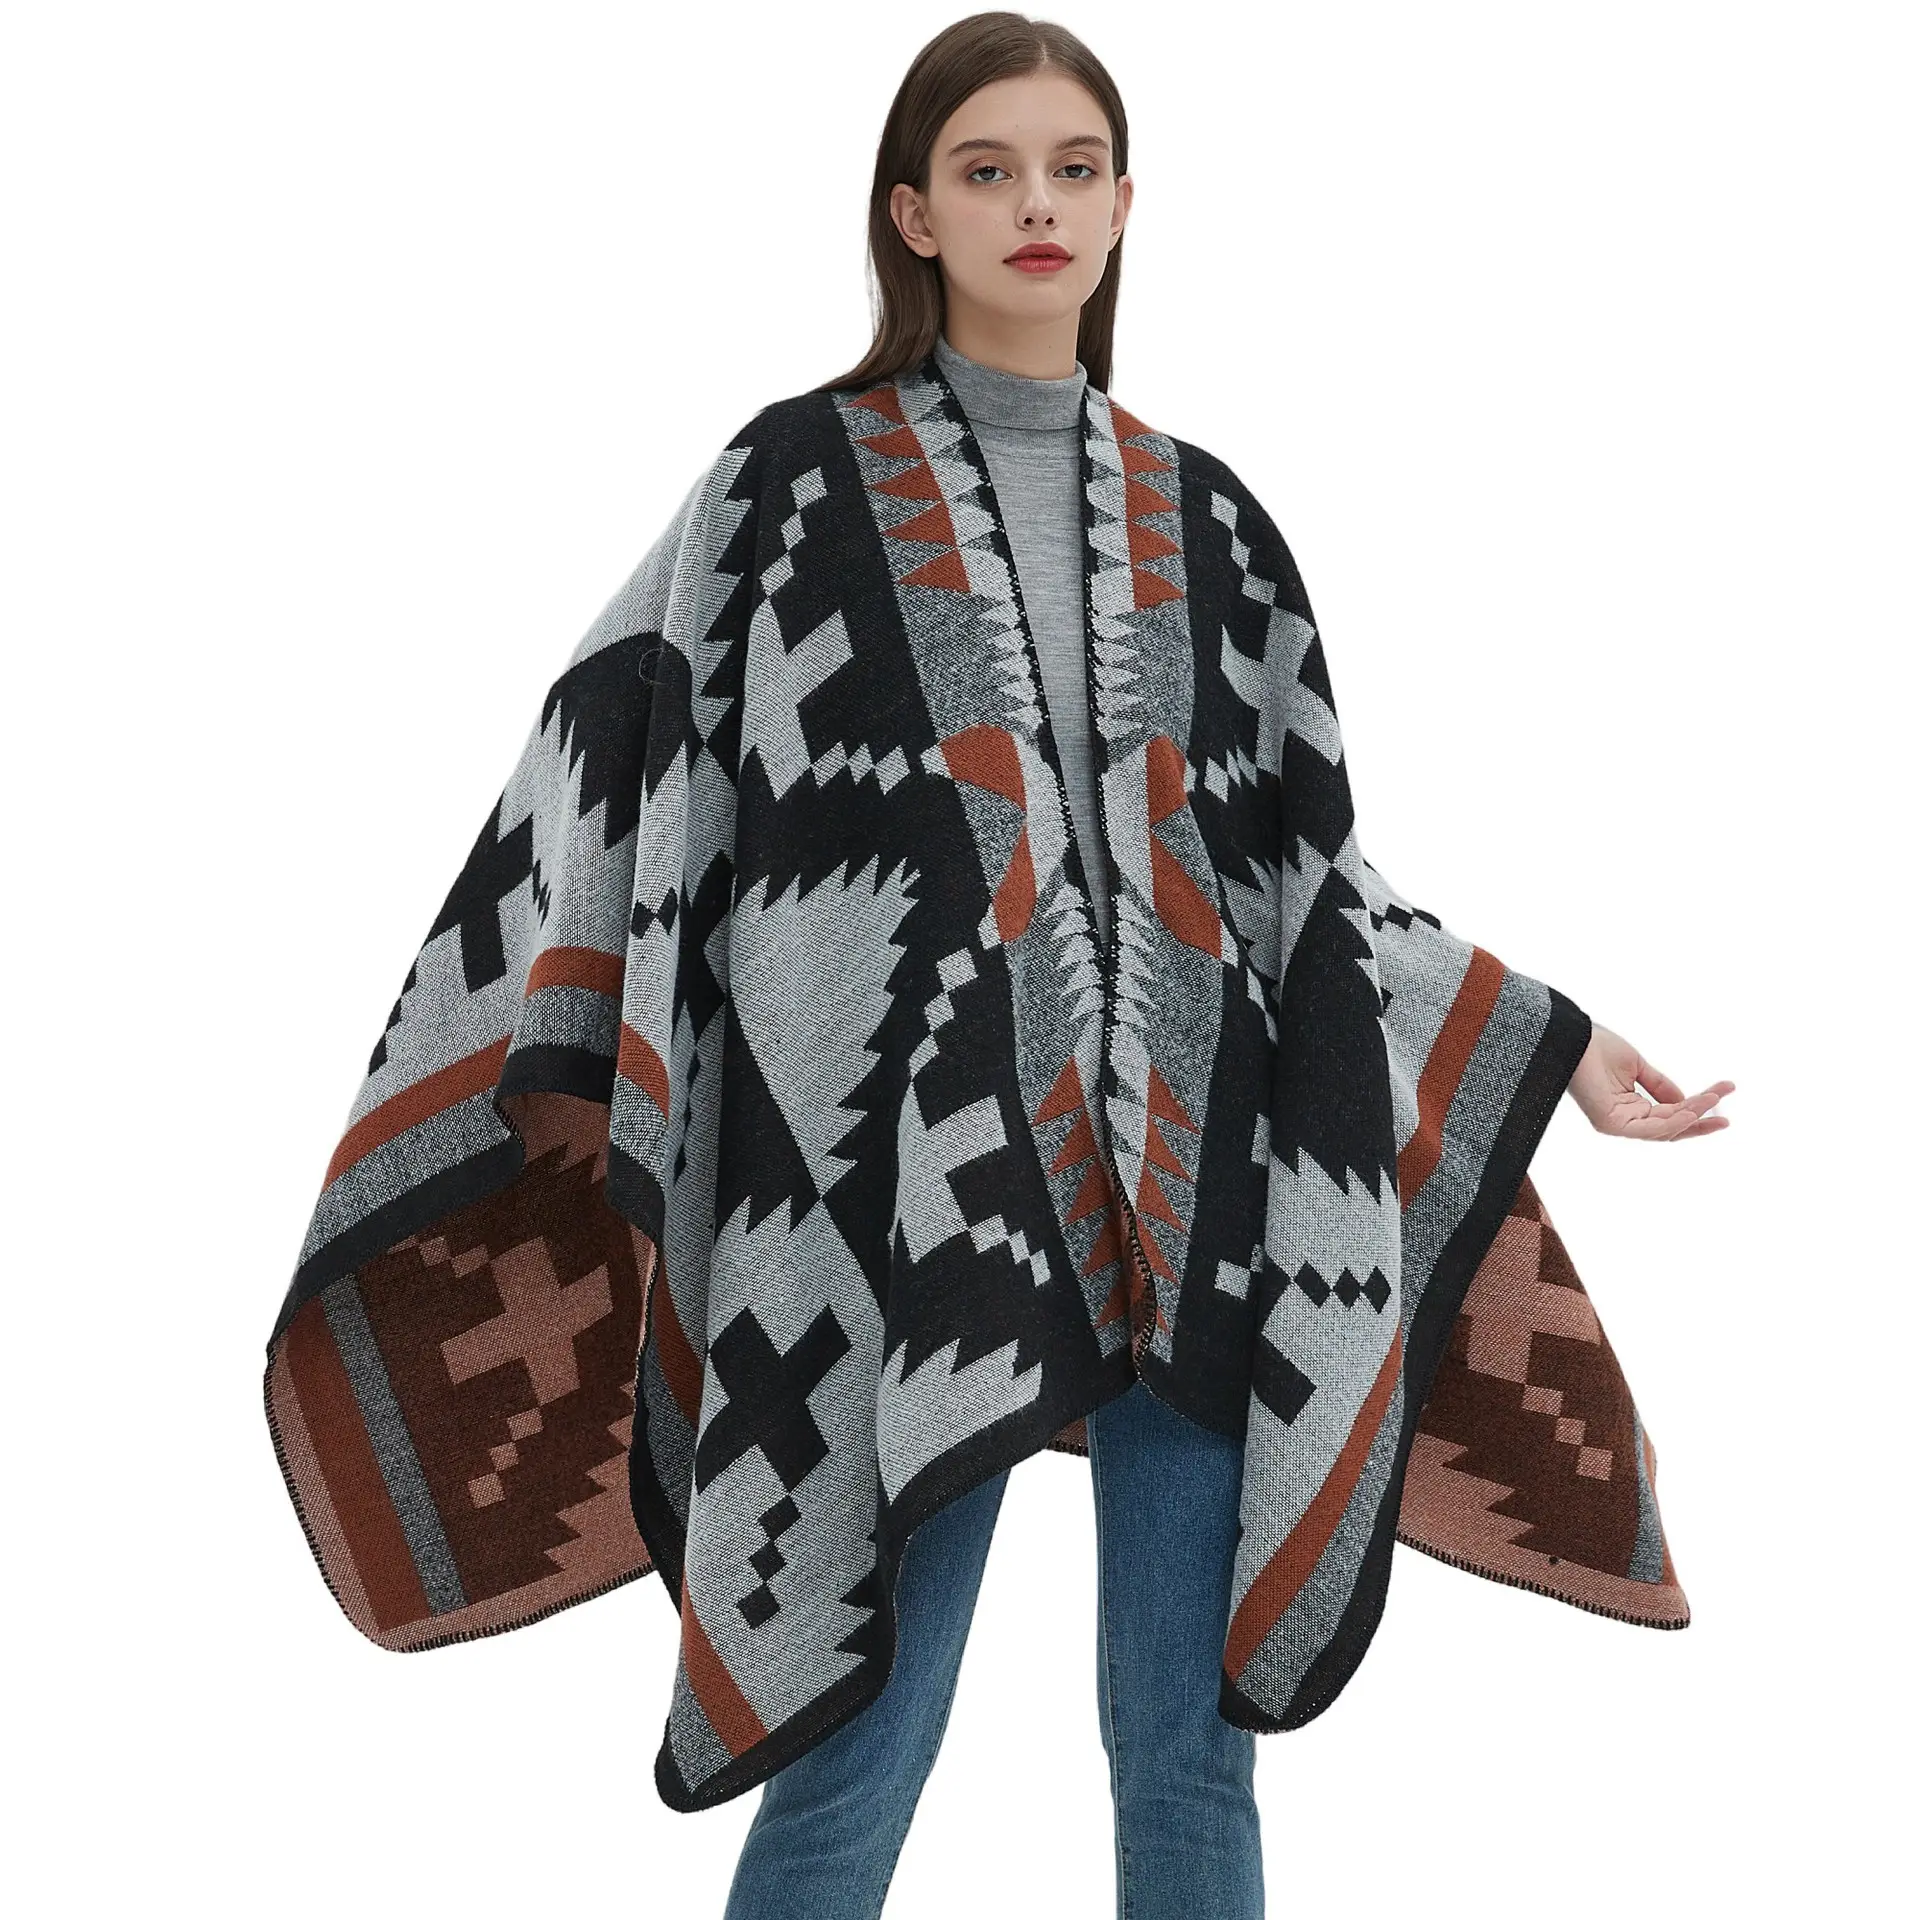 Estilo étnico bohemio Otoño Invierno espesar cálido acrílico tejido chal largo para damas Vintage patrón geométrico bufanda chales